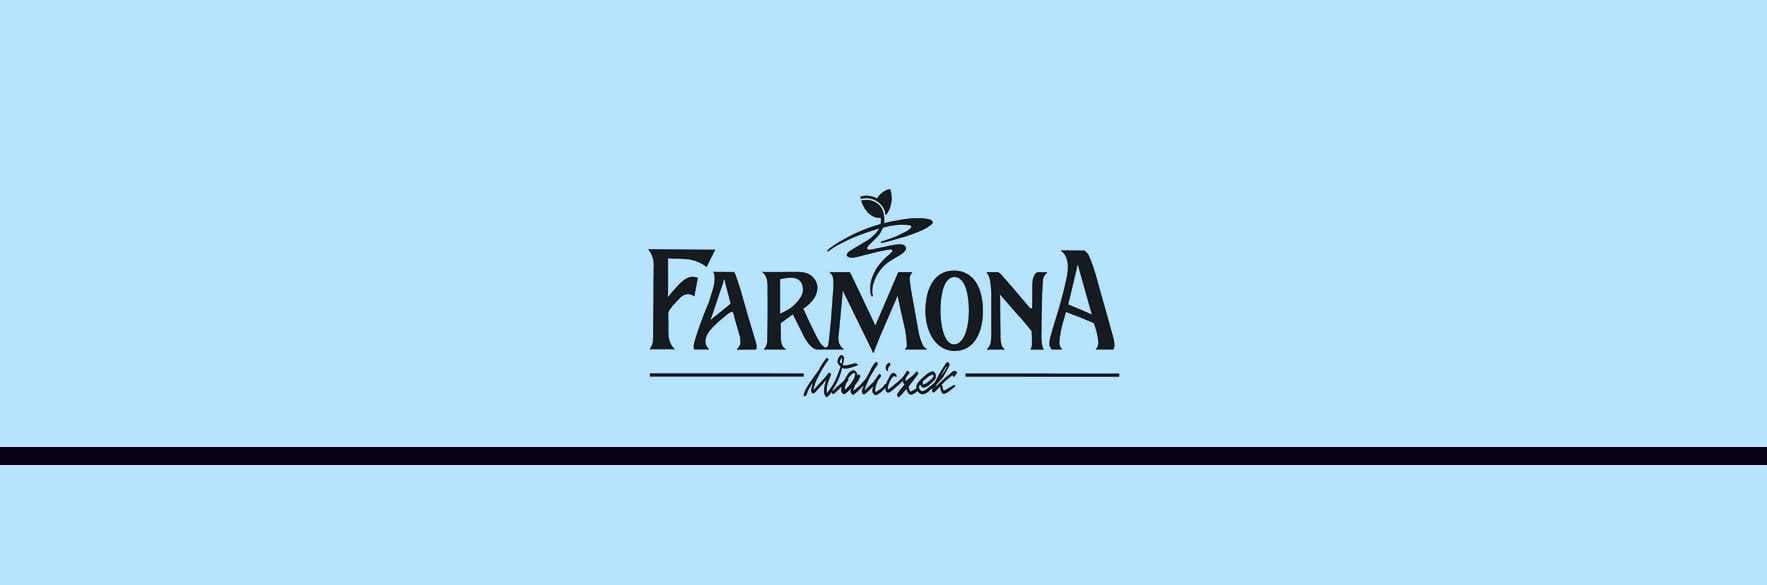 خرید محصولات فارمونا FARMONA